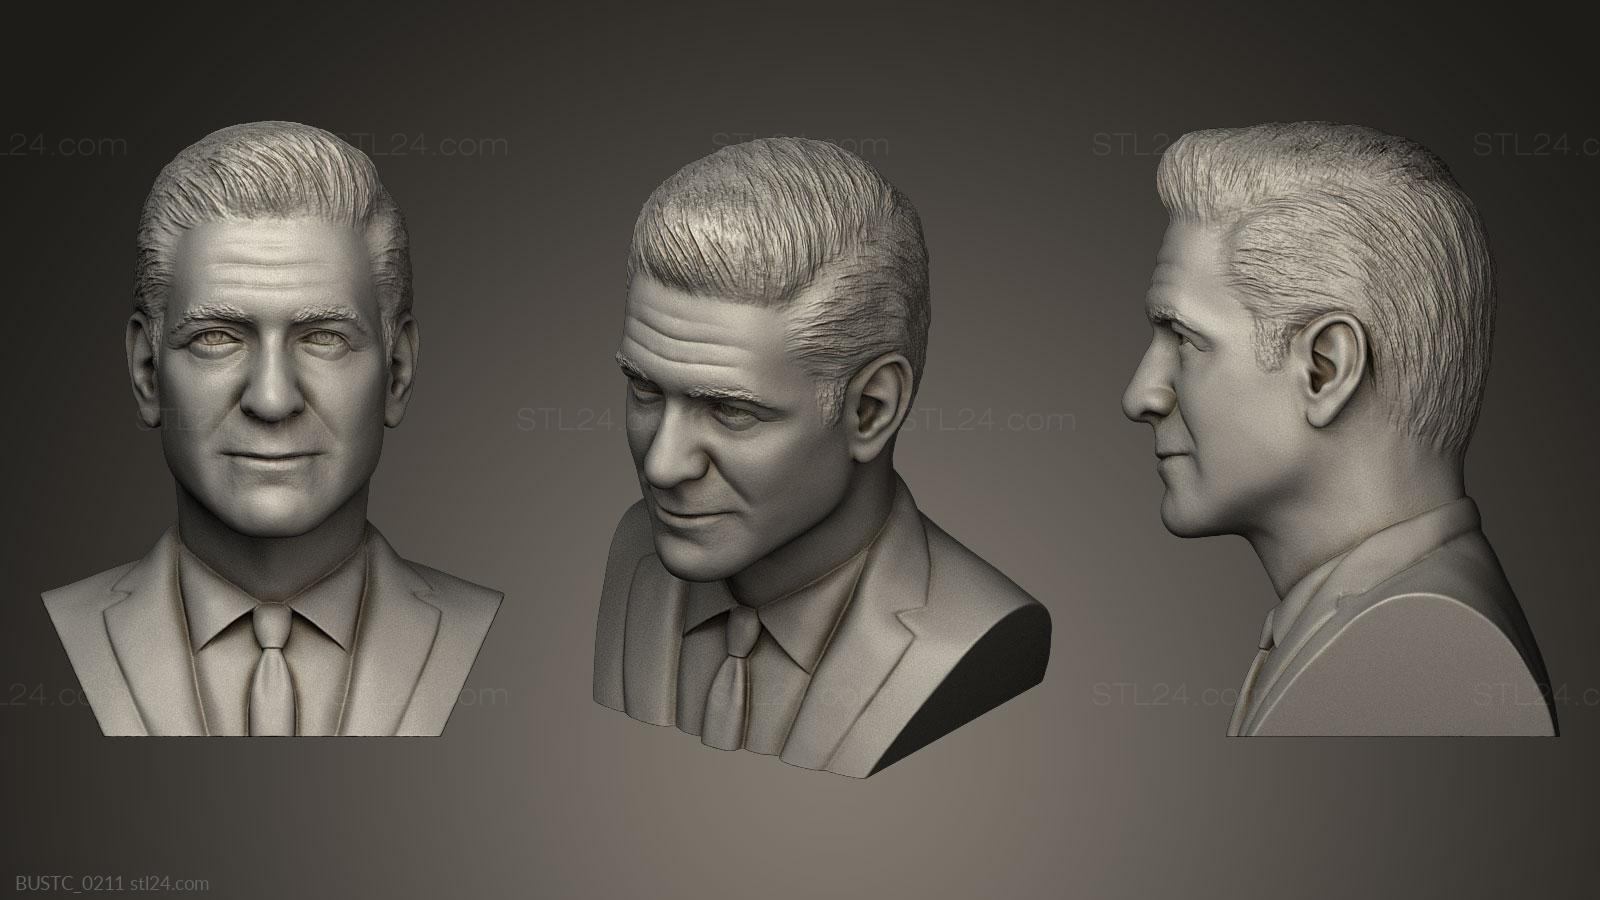 Бюсты и барельефы известных личностей (Джордж Клуни, BUSTC_0211) 3D модель для ЧПУ станка